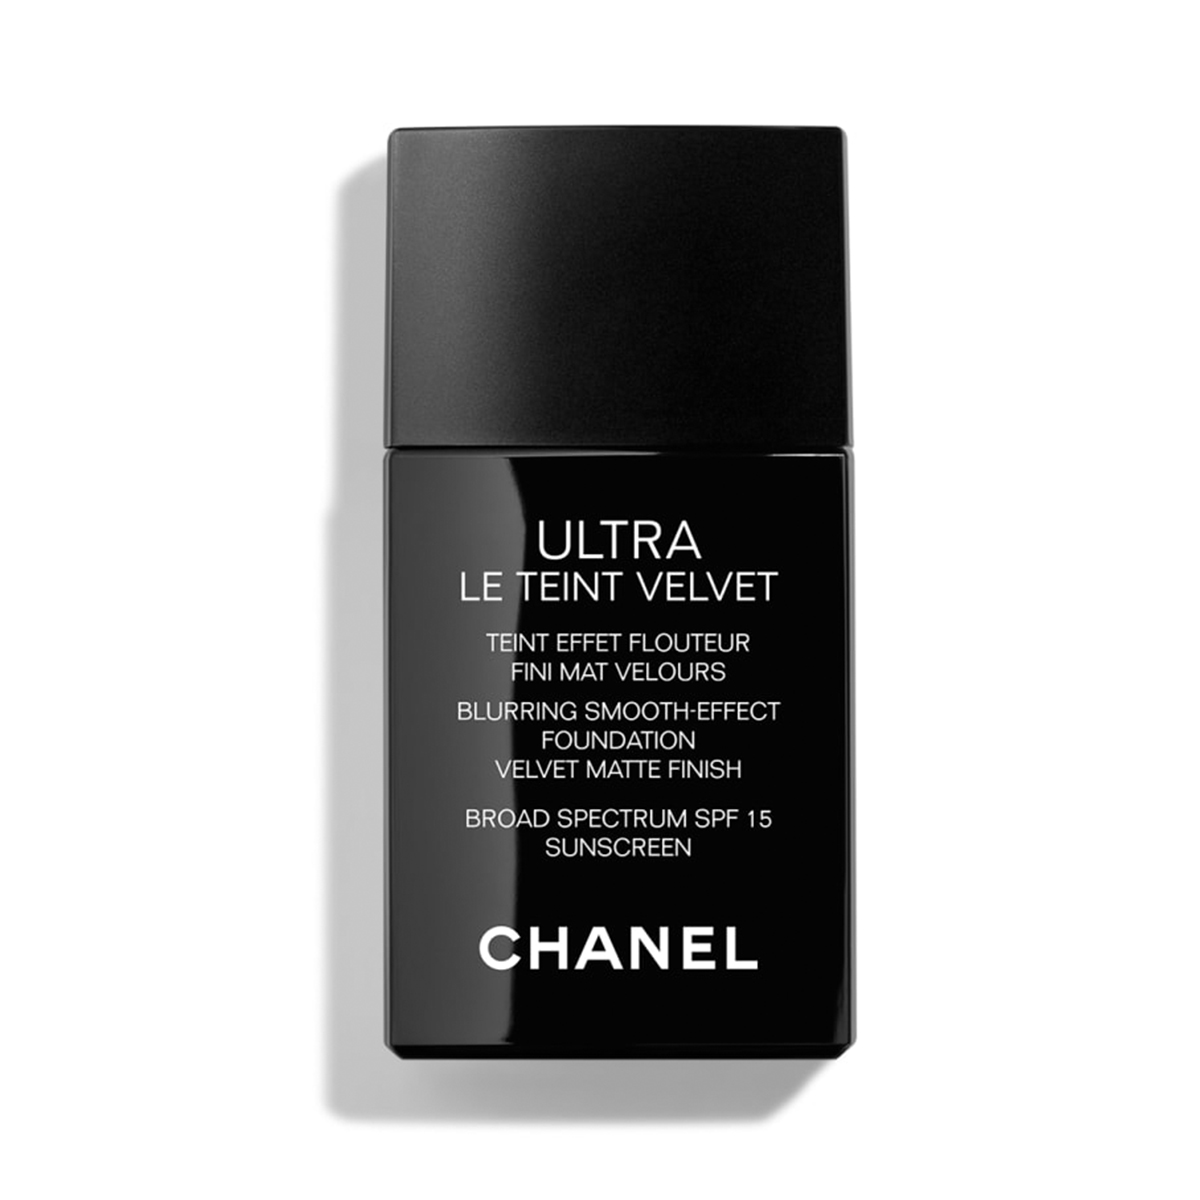 Best foundations for mature skin: Chanel Ultra le Teint Velvet